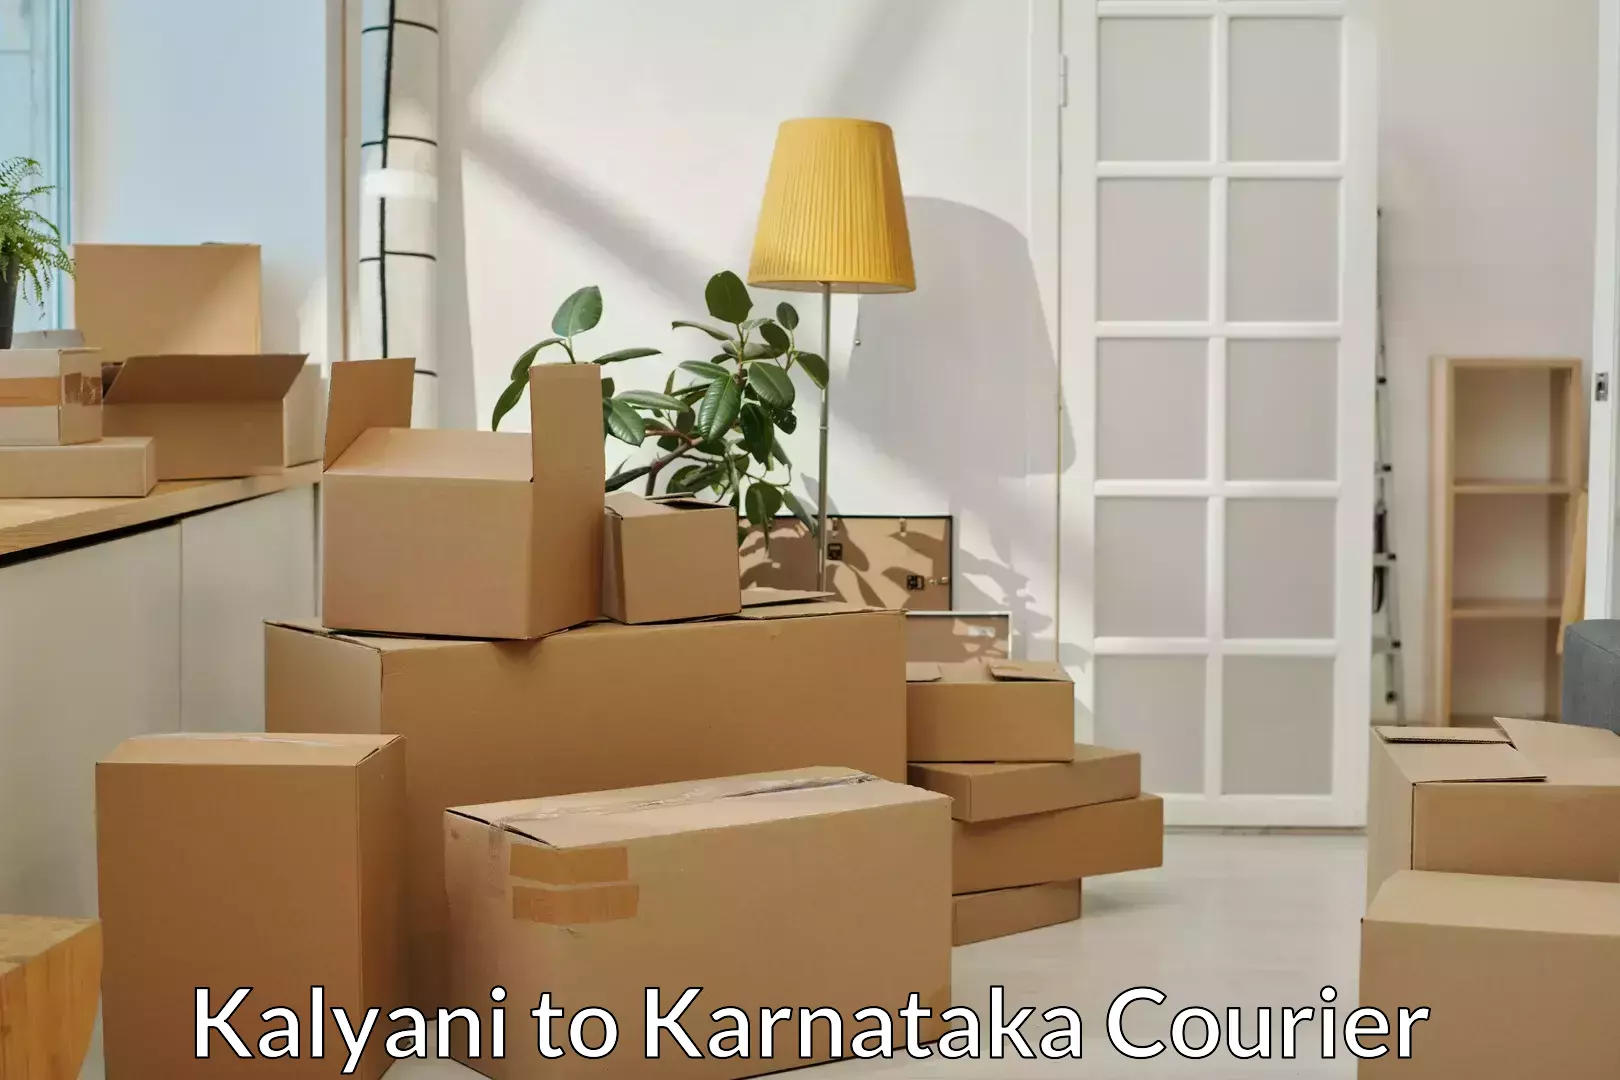 Furniture relocation experts Kalyani to Kalaburagi